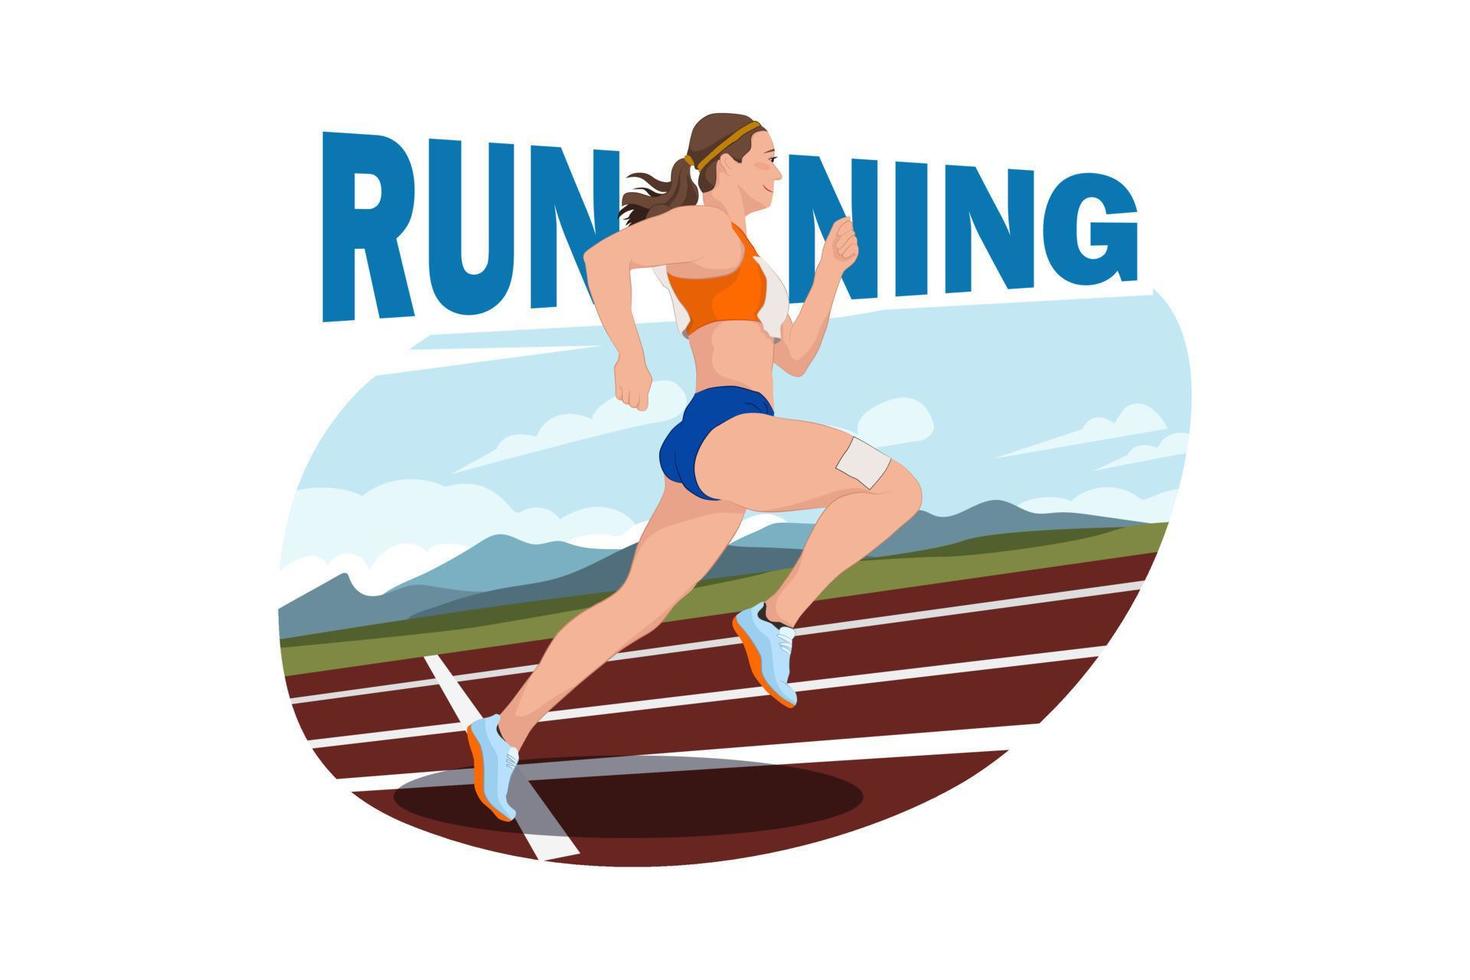 meisje joggen. meisjesatleet in het volgen van kleding die loopt met typografie met woorden op de achtergrond vector